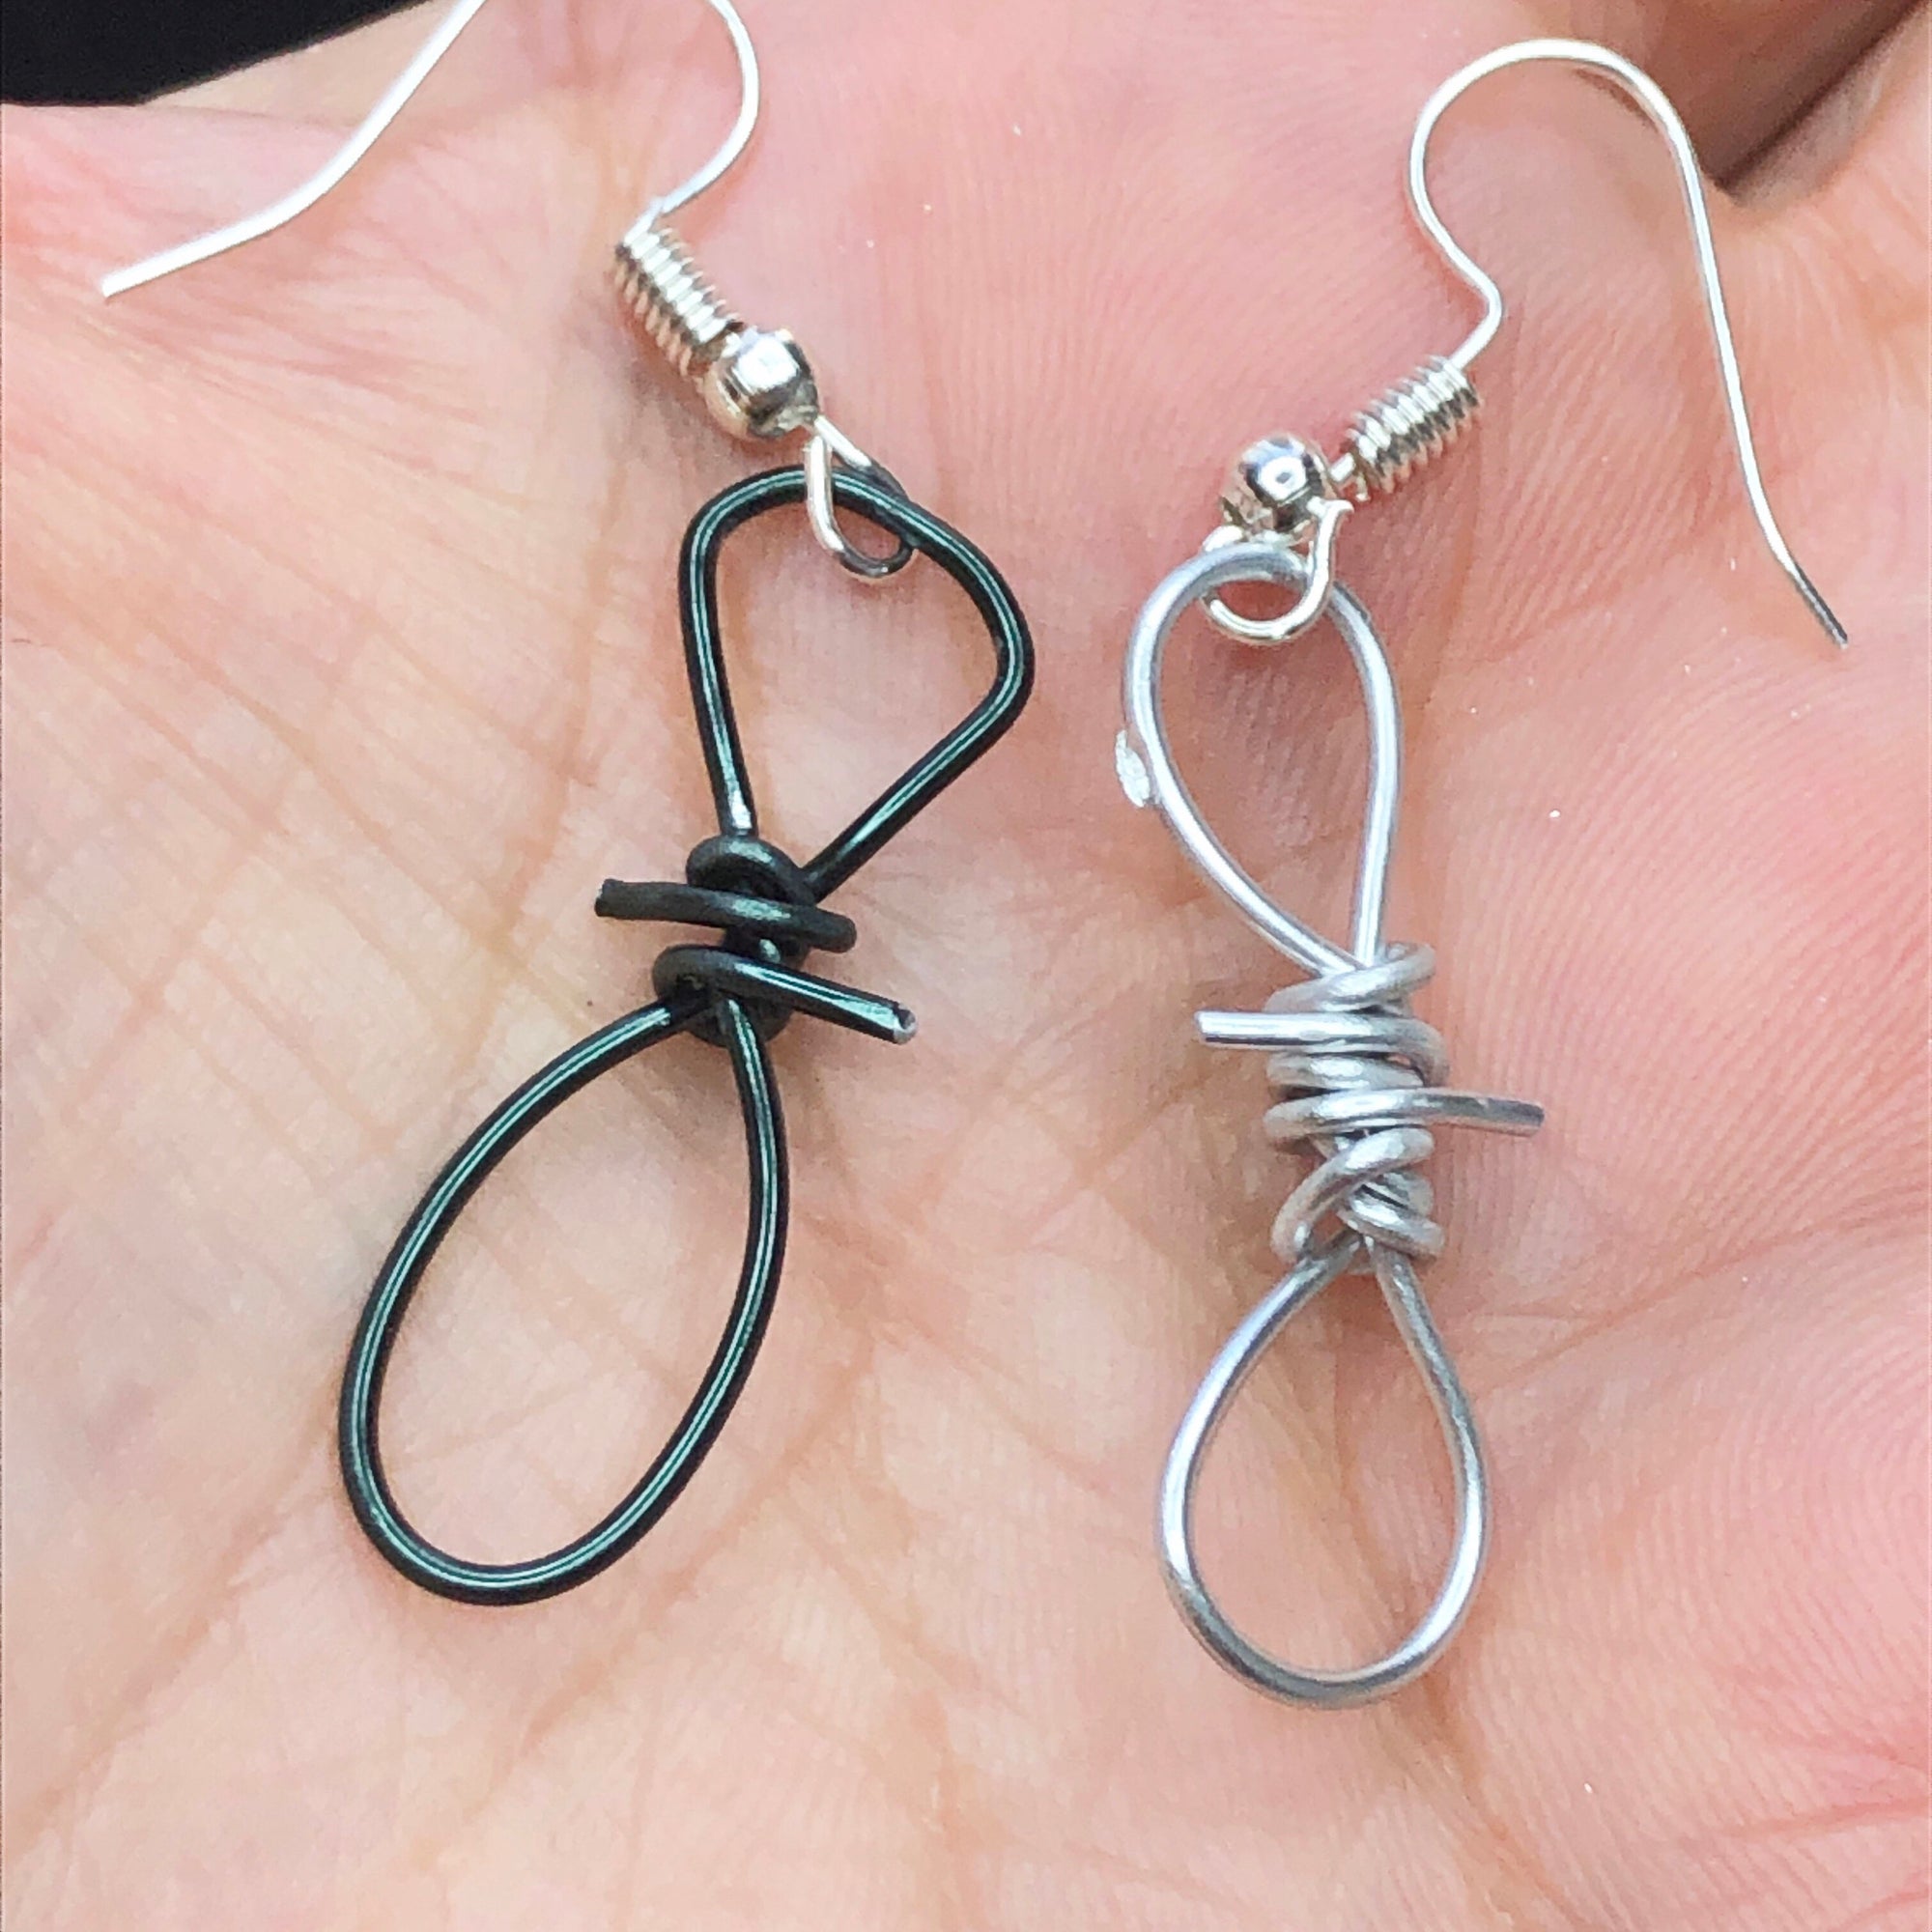 Barbed wire earrings for men • Unusual drop earrings • Mens dangle earring • Emo punk earrings • Spike grunge jewelry • Axe earrings